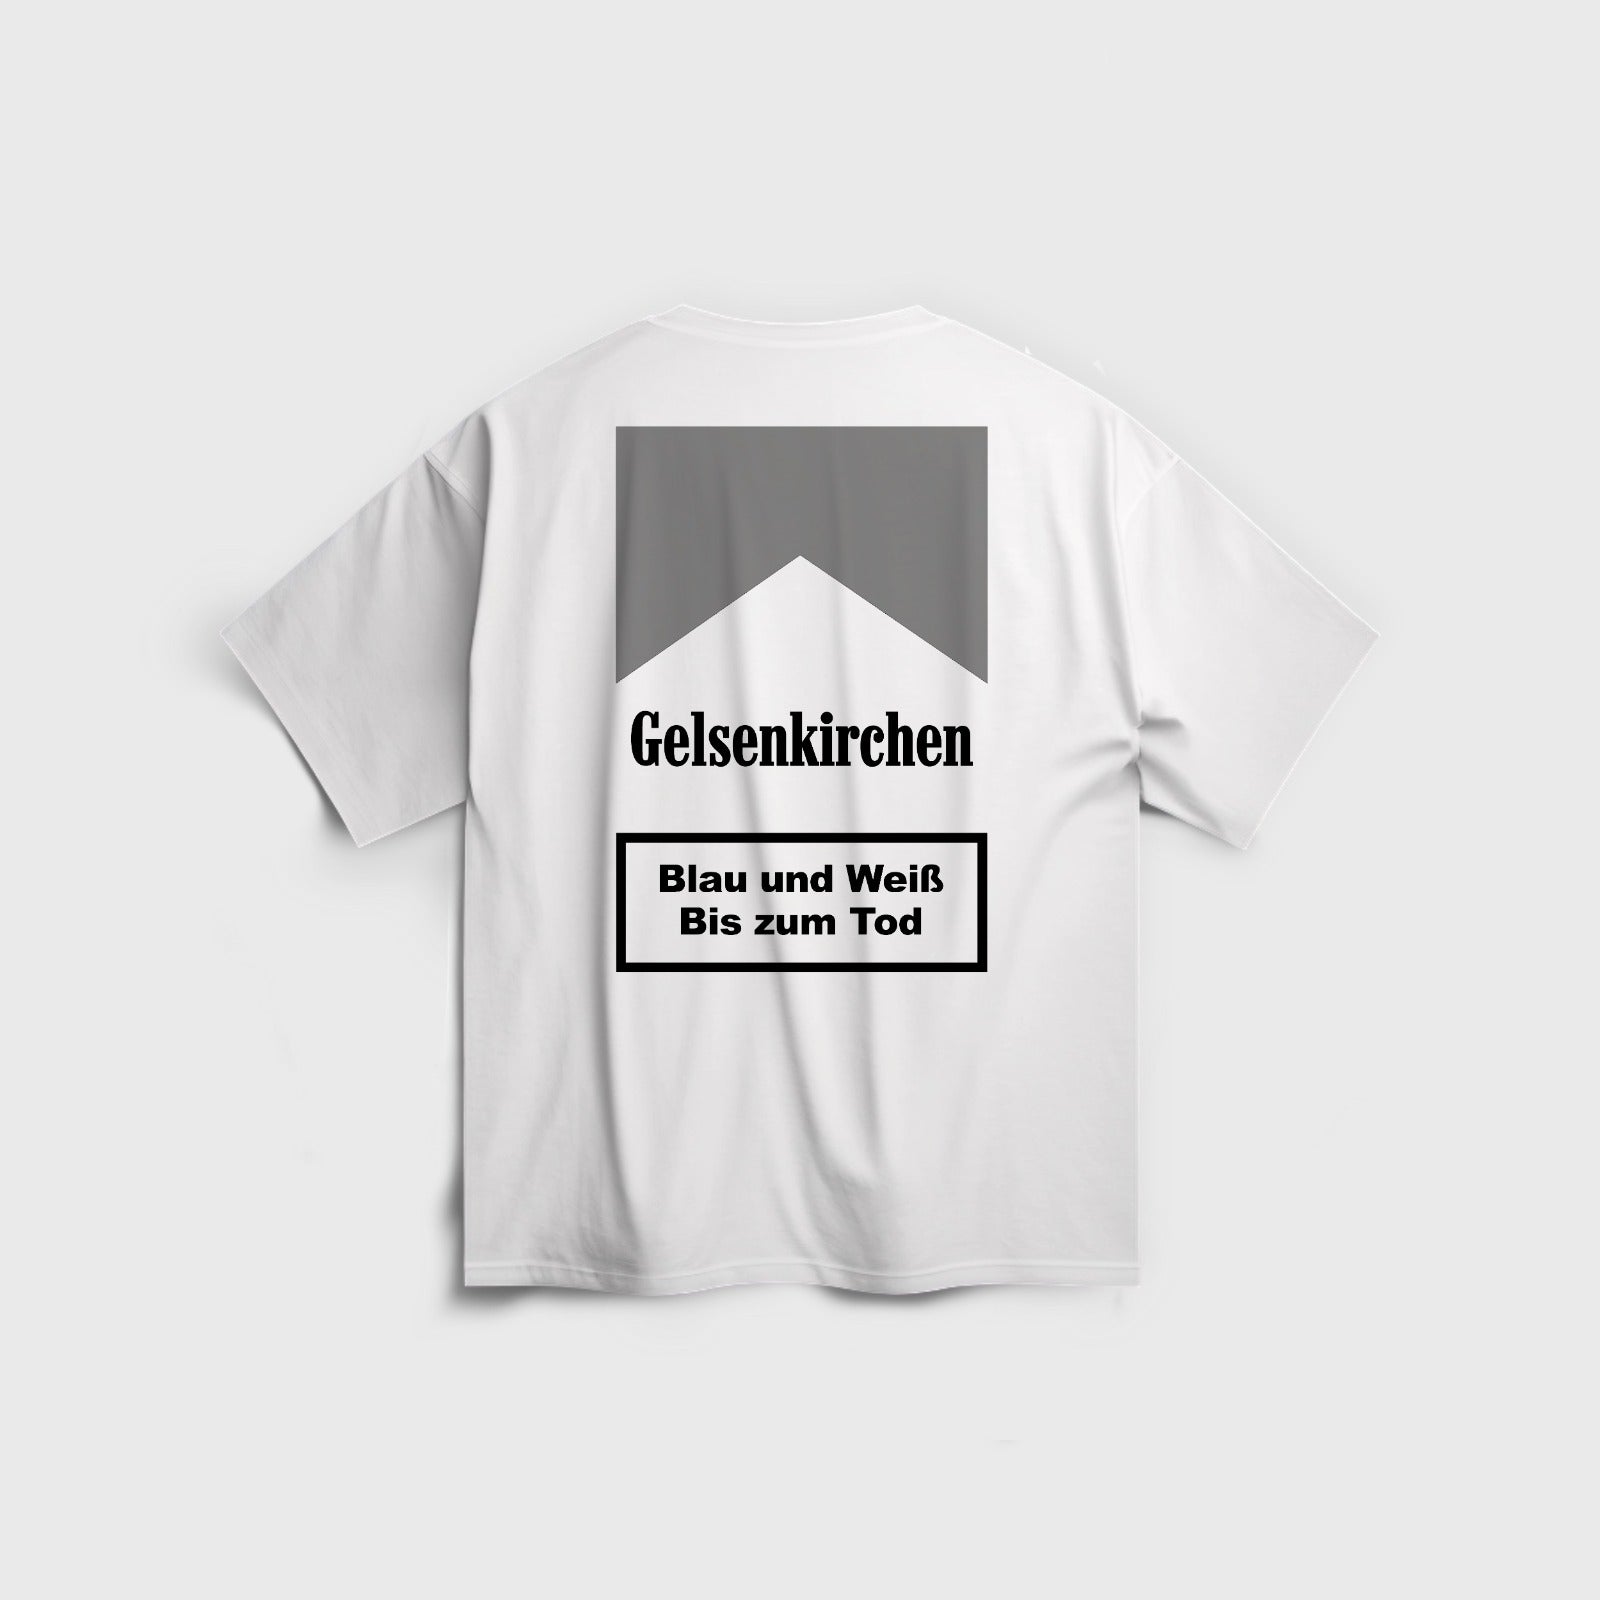 Gelsenkirchen Bis zum Tod - T-Shirt Oversize